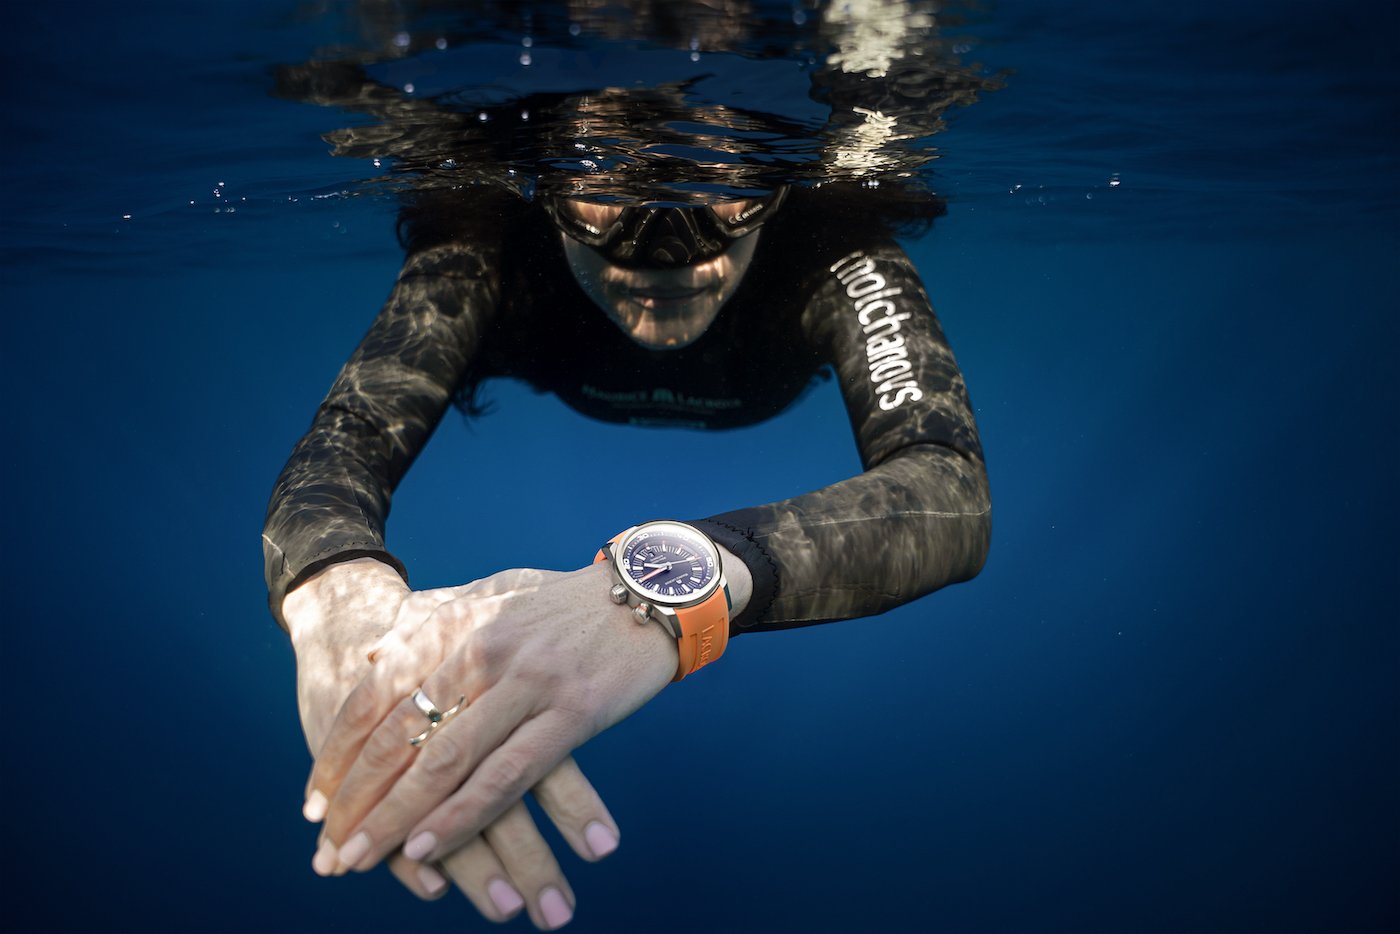 Maurice Lacroix unveils the new Pontos S Diver